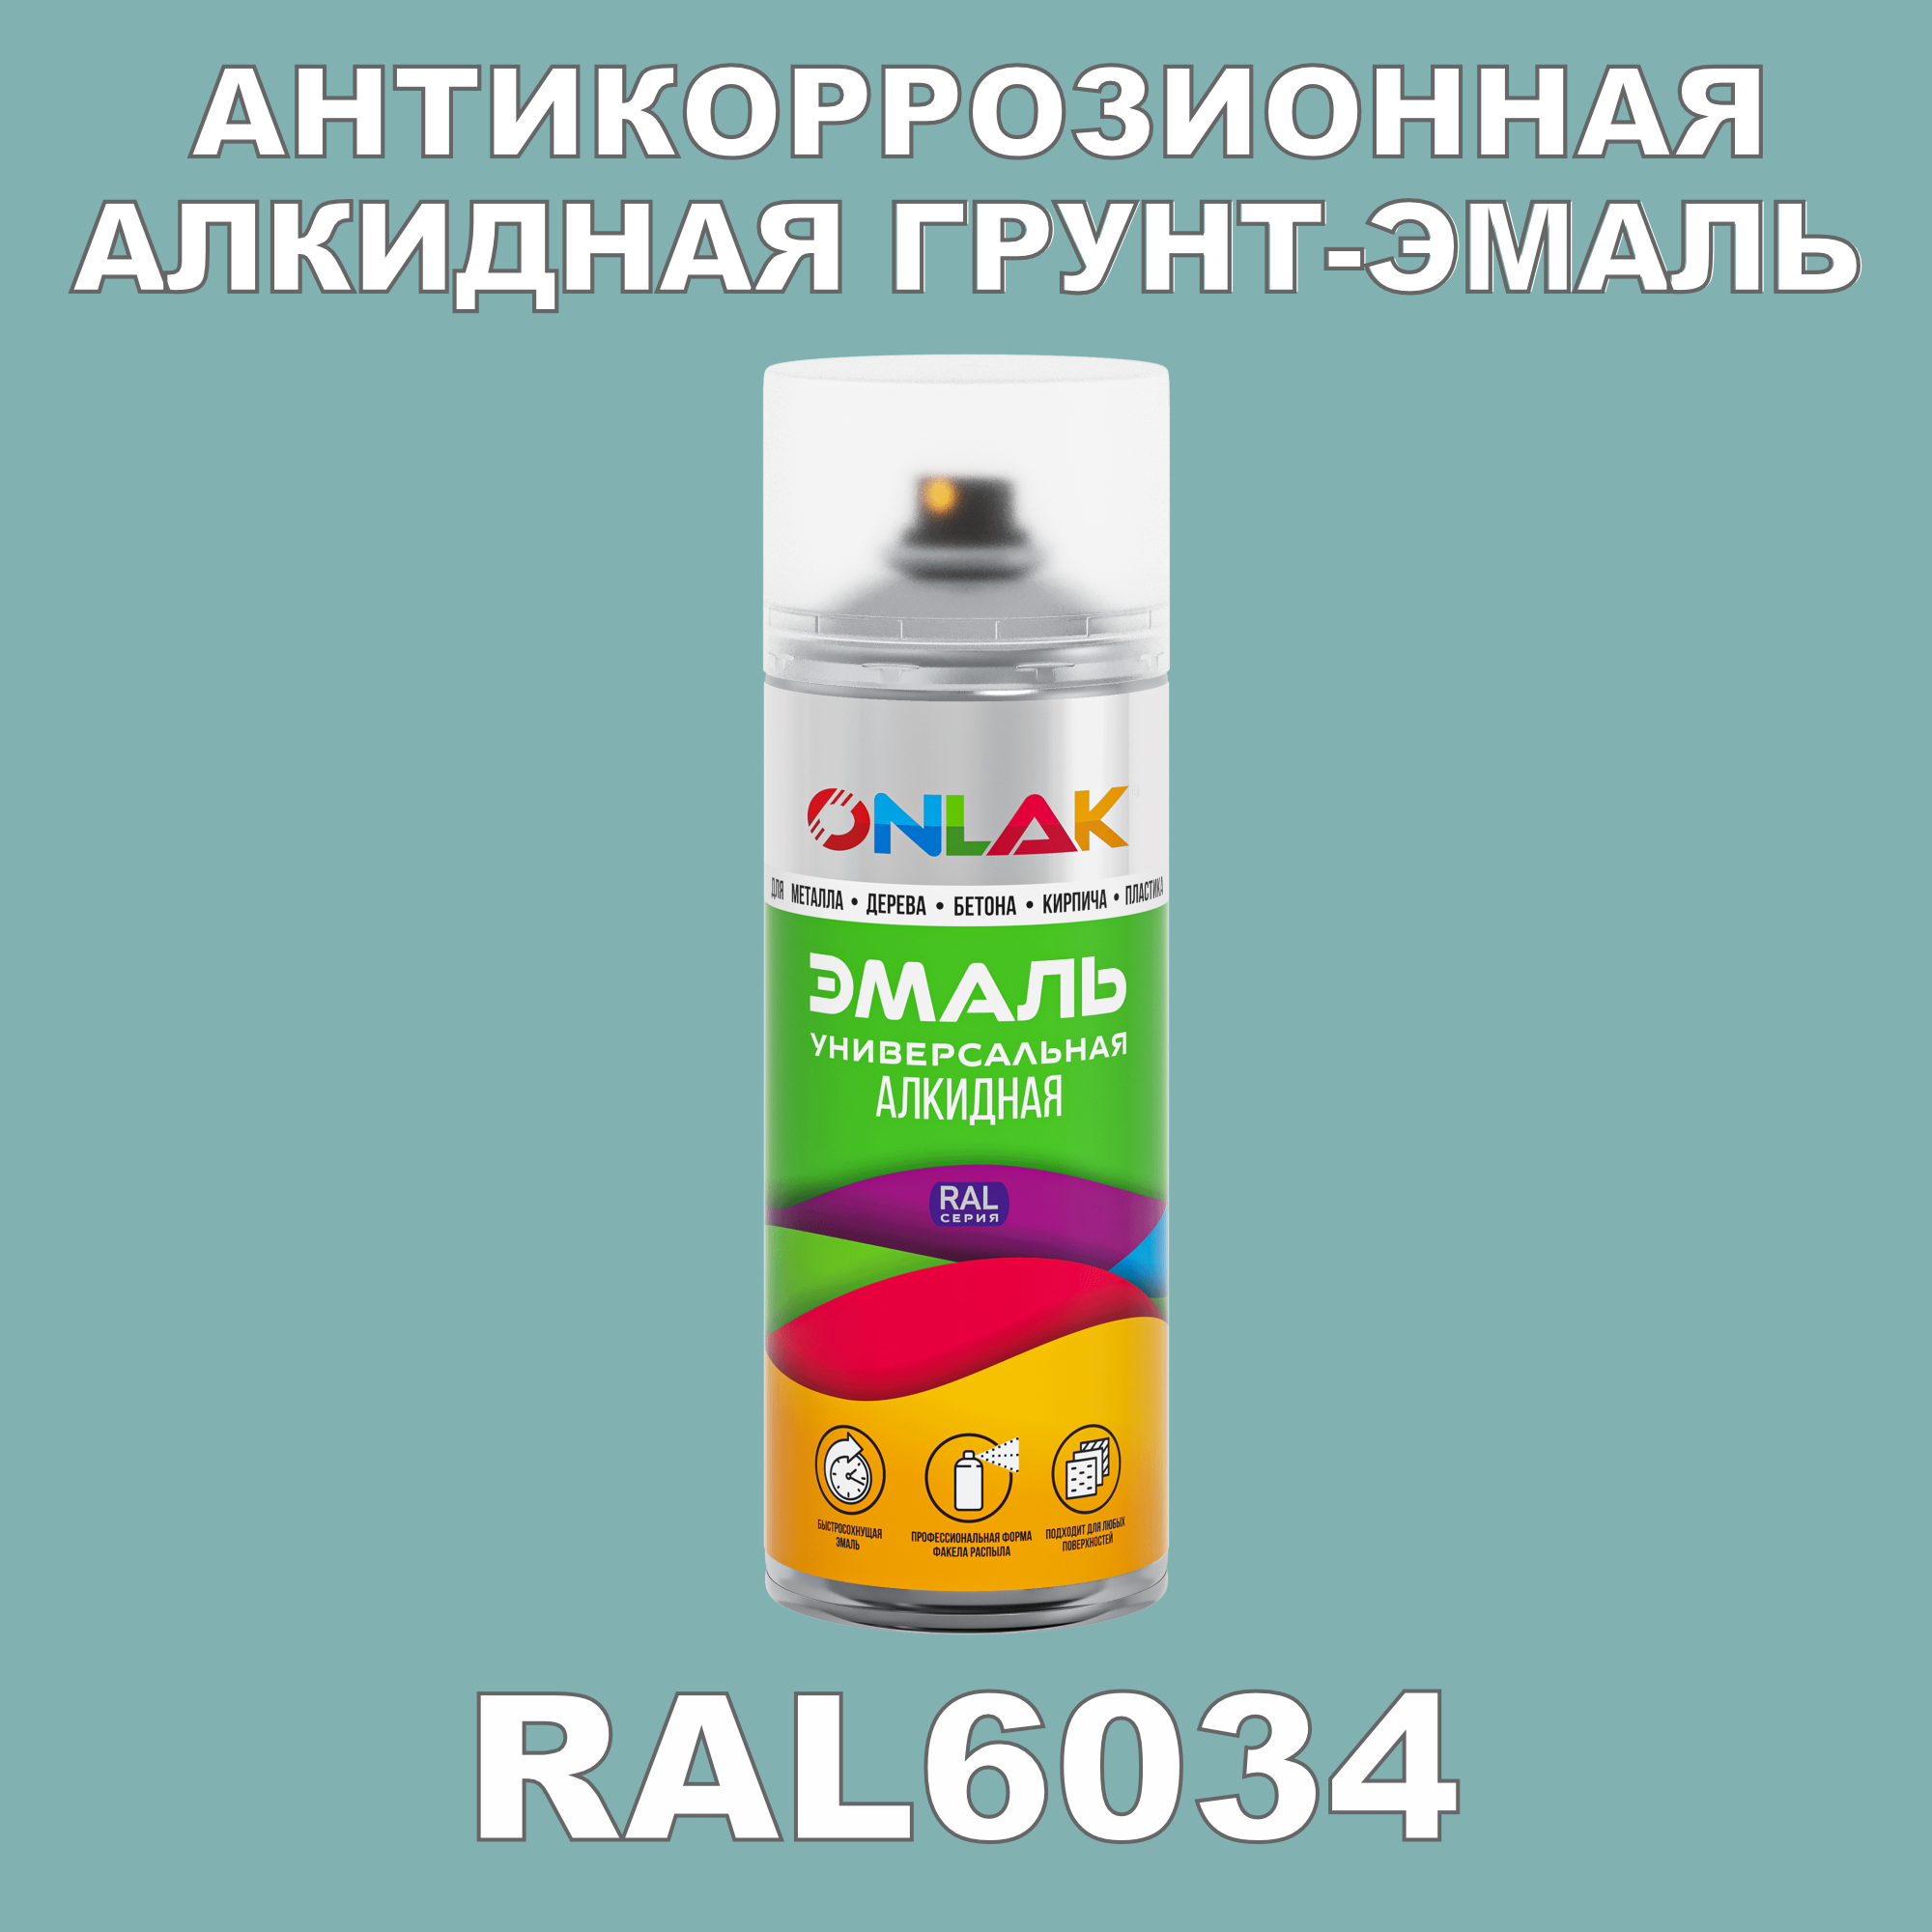 Антикоррозионная грунт-эмаль ONLAK RAL 6034,зеленый,689 мл